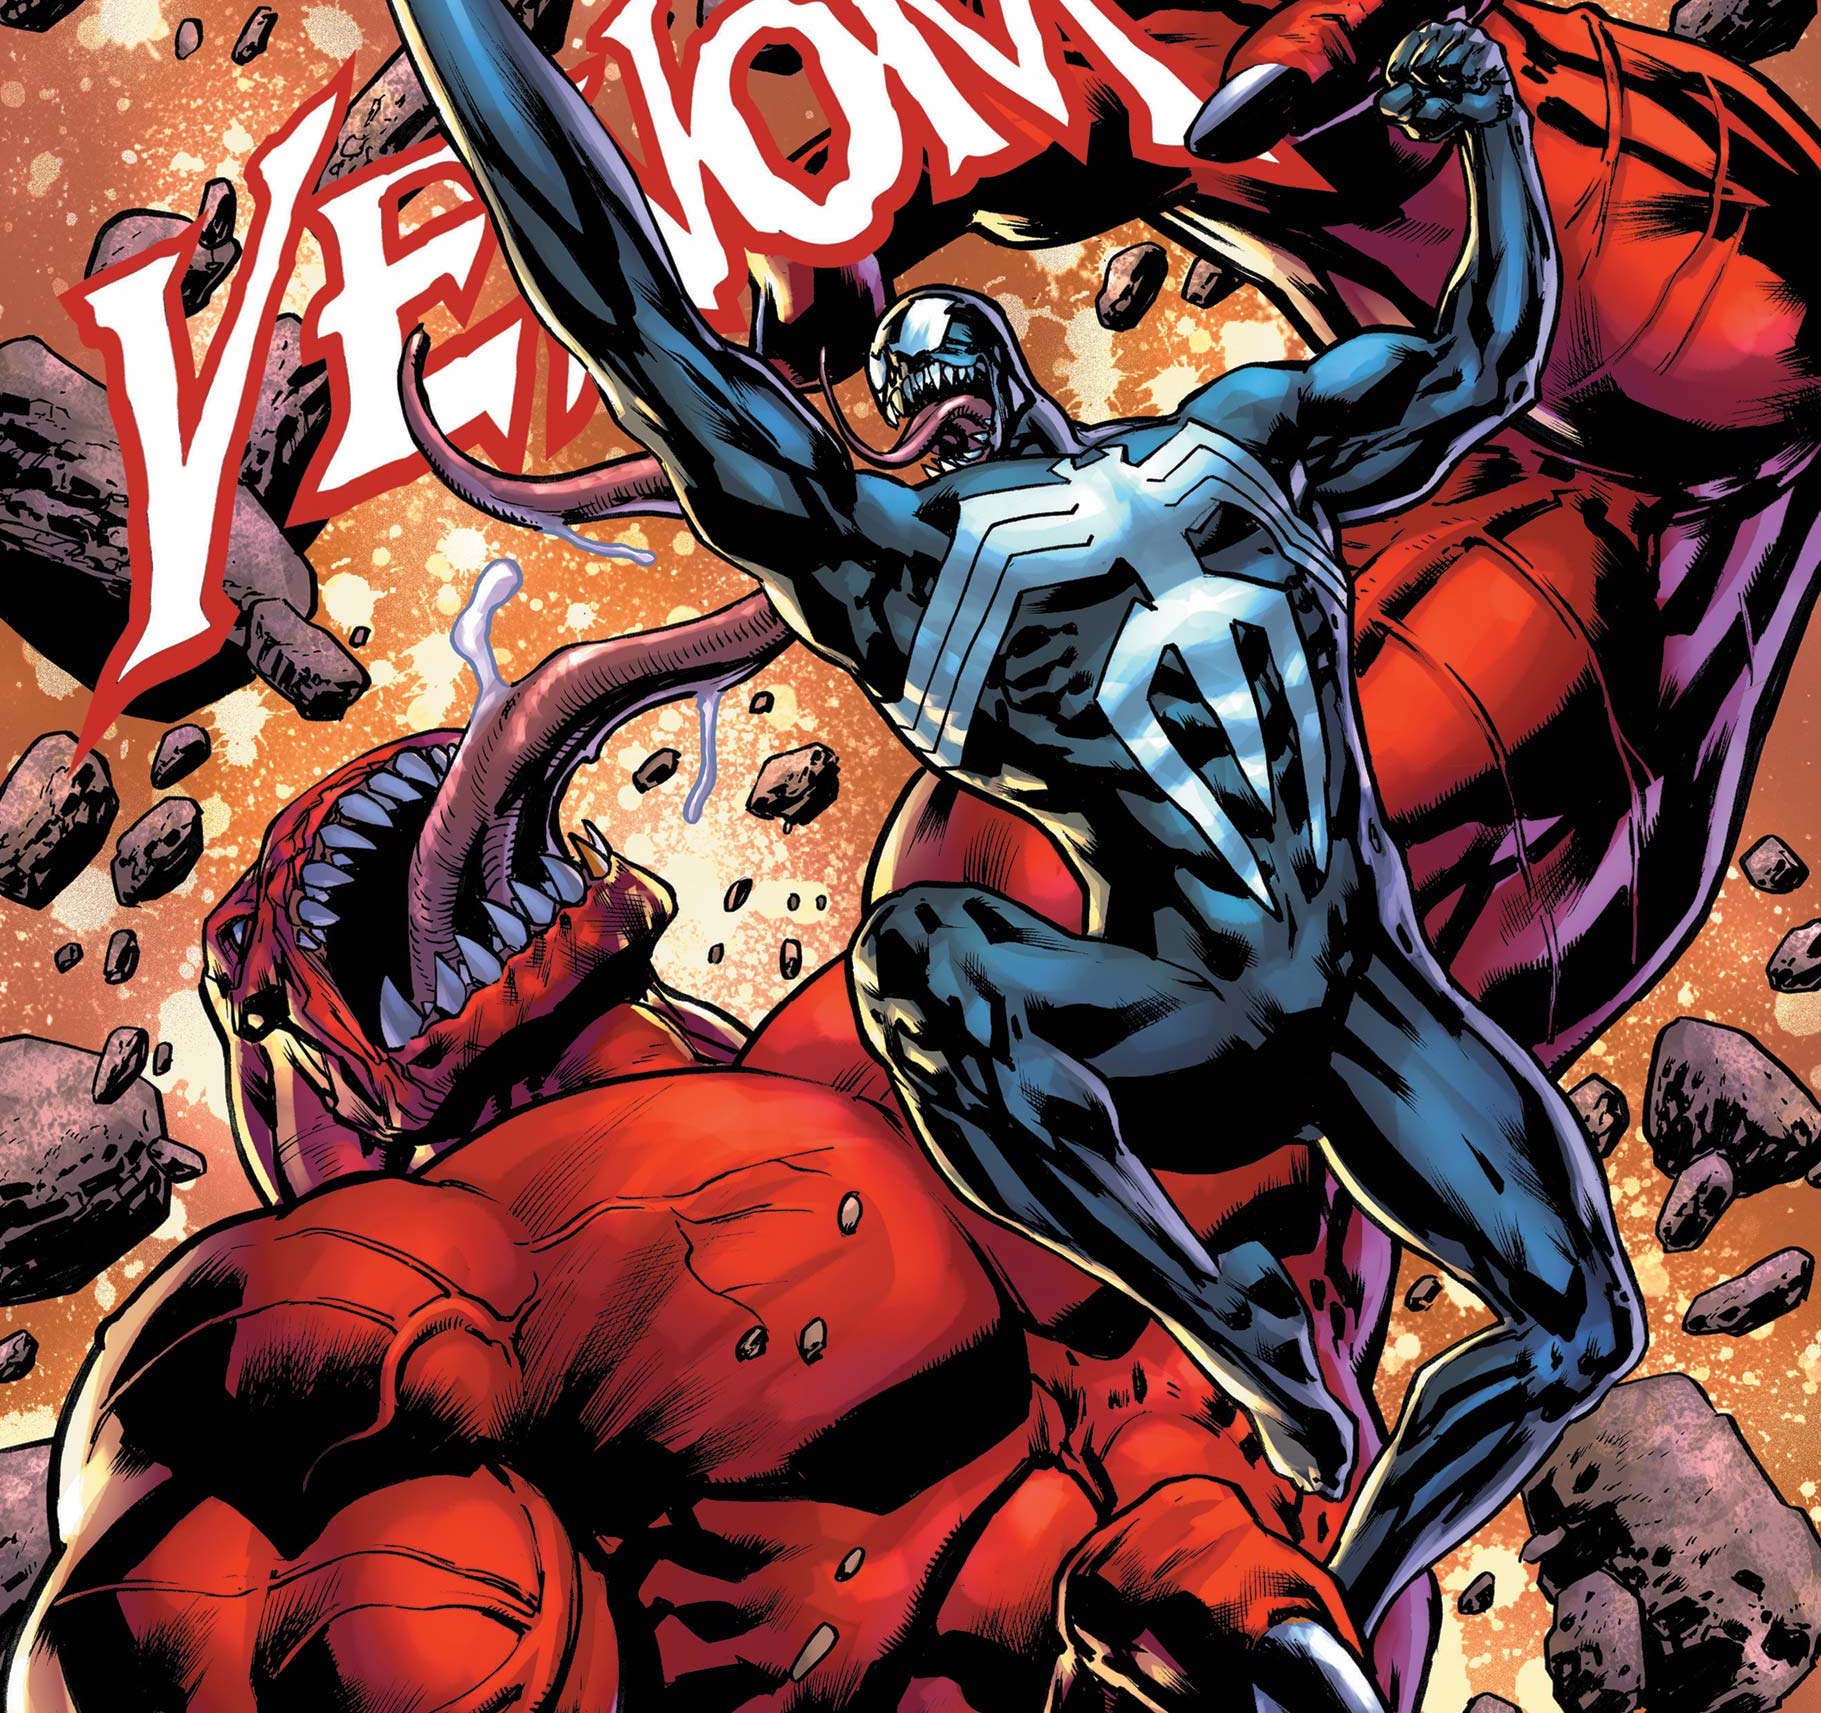 'Venom' #7 is great fight comics fun